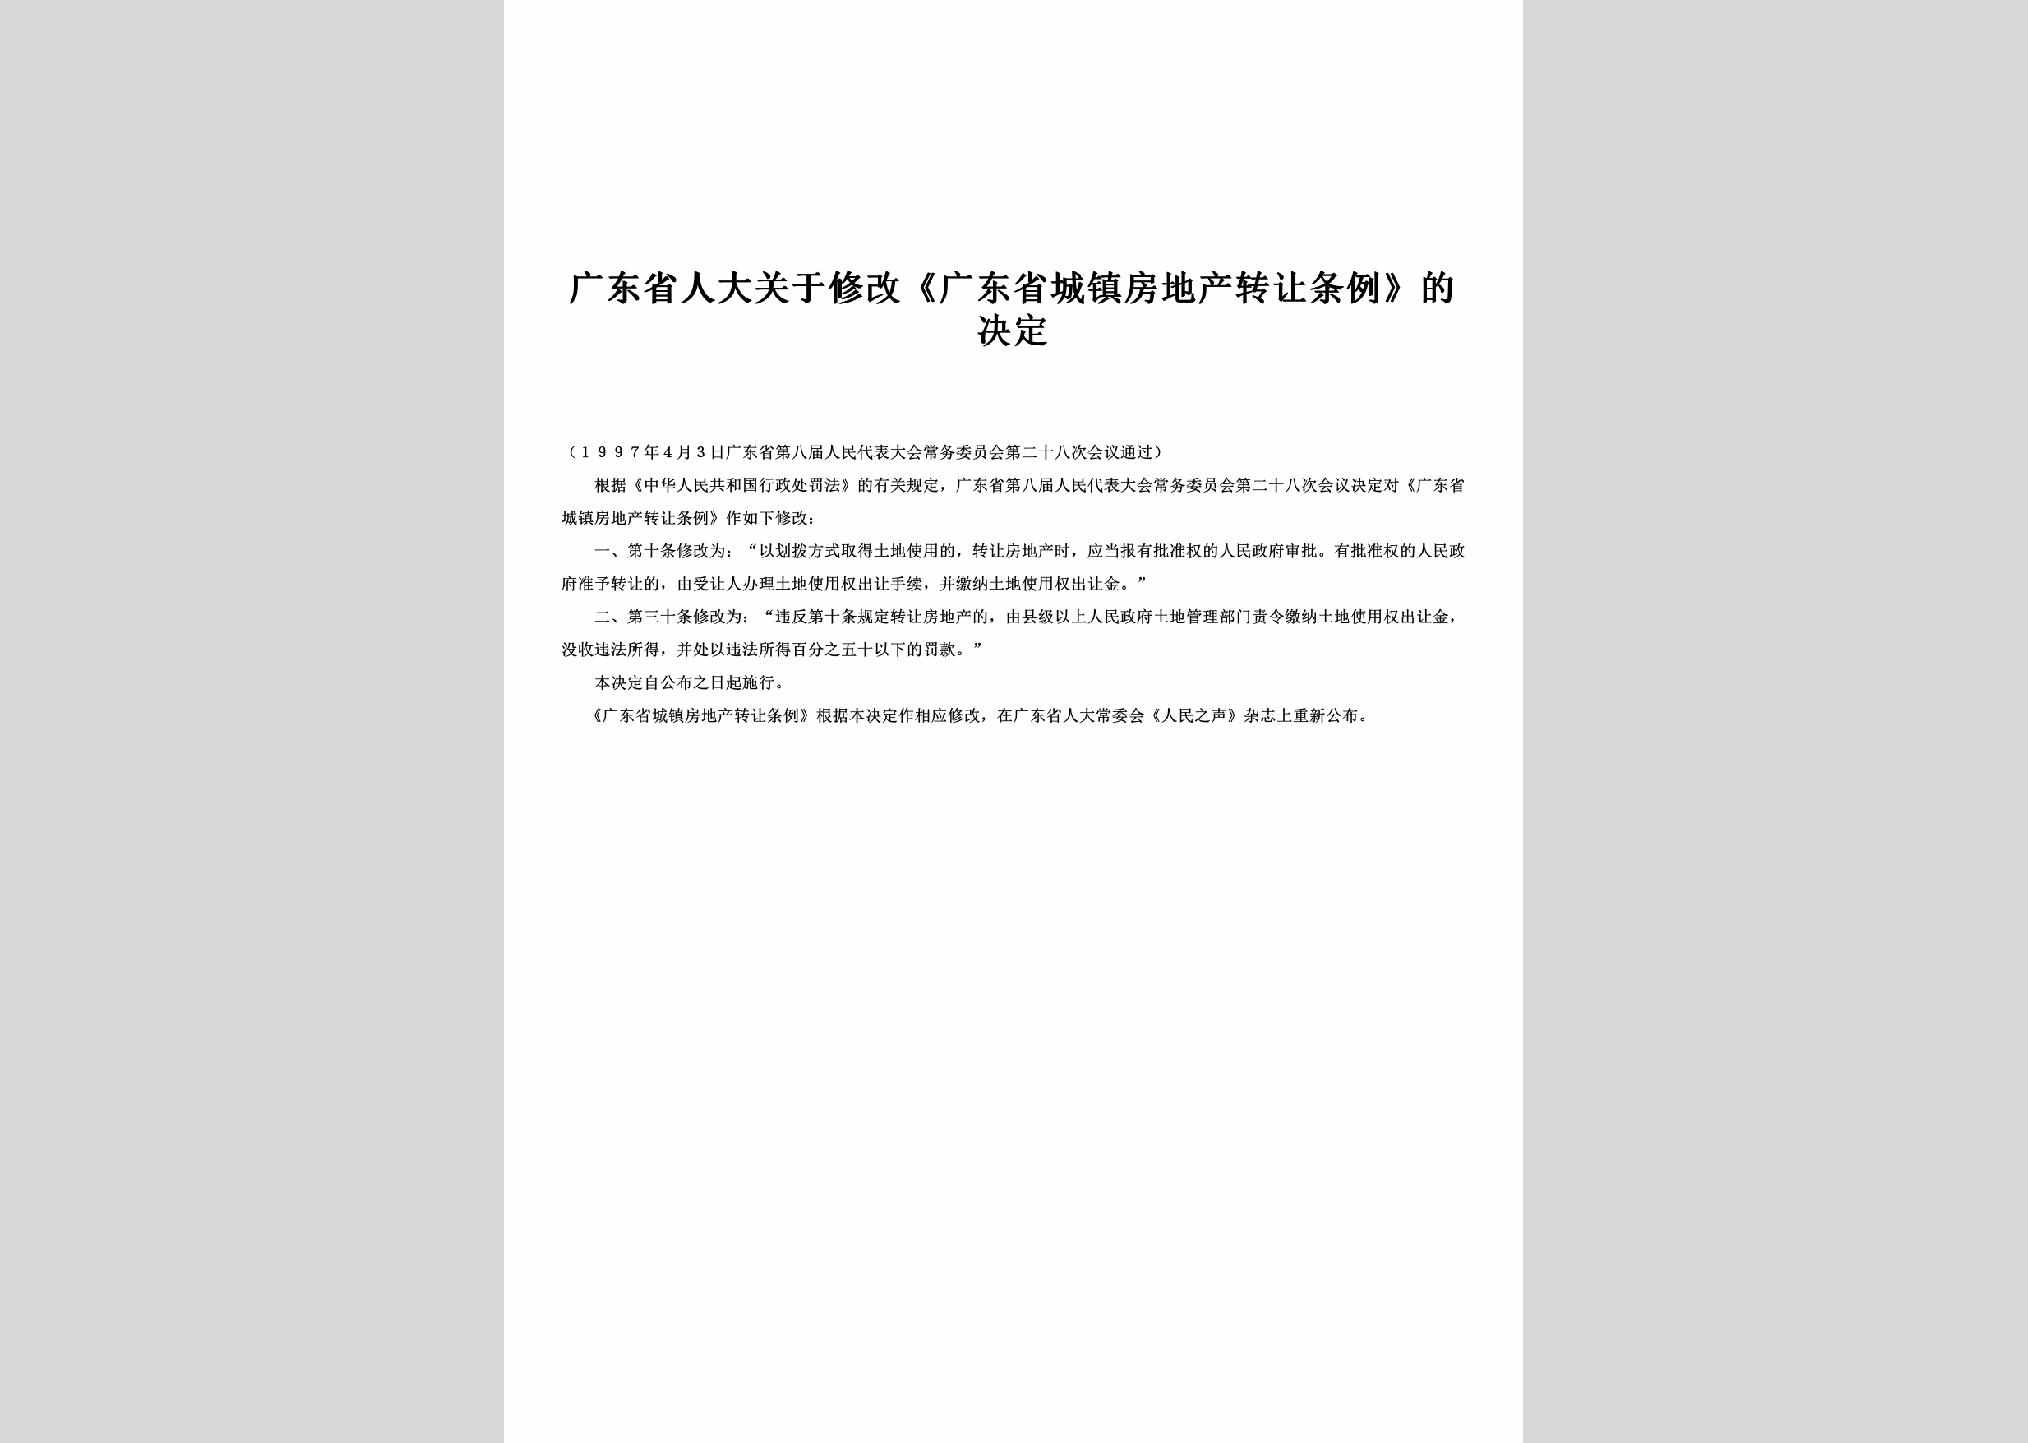 GD-CZFCZRTL-1997：关于修改《广东省城镇房地产转让条例》的决定